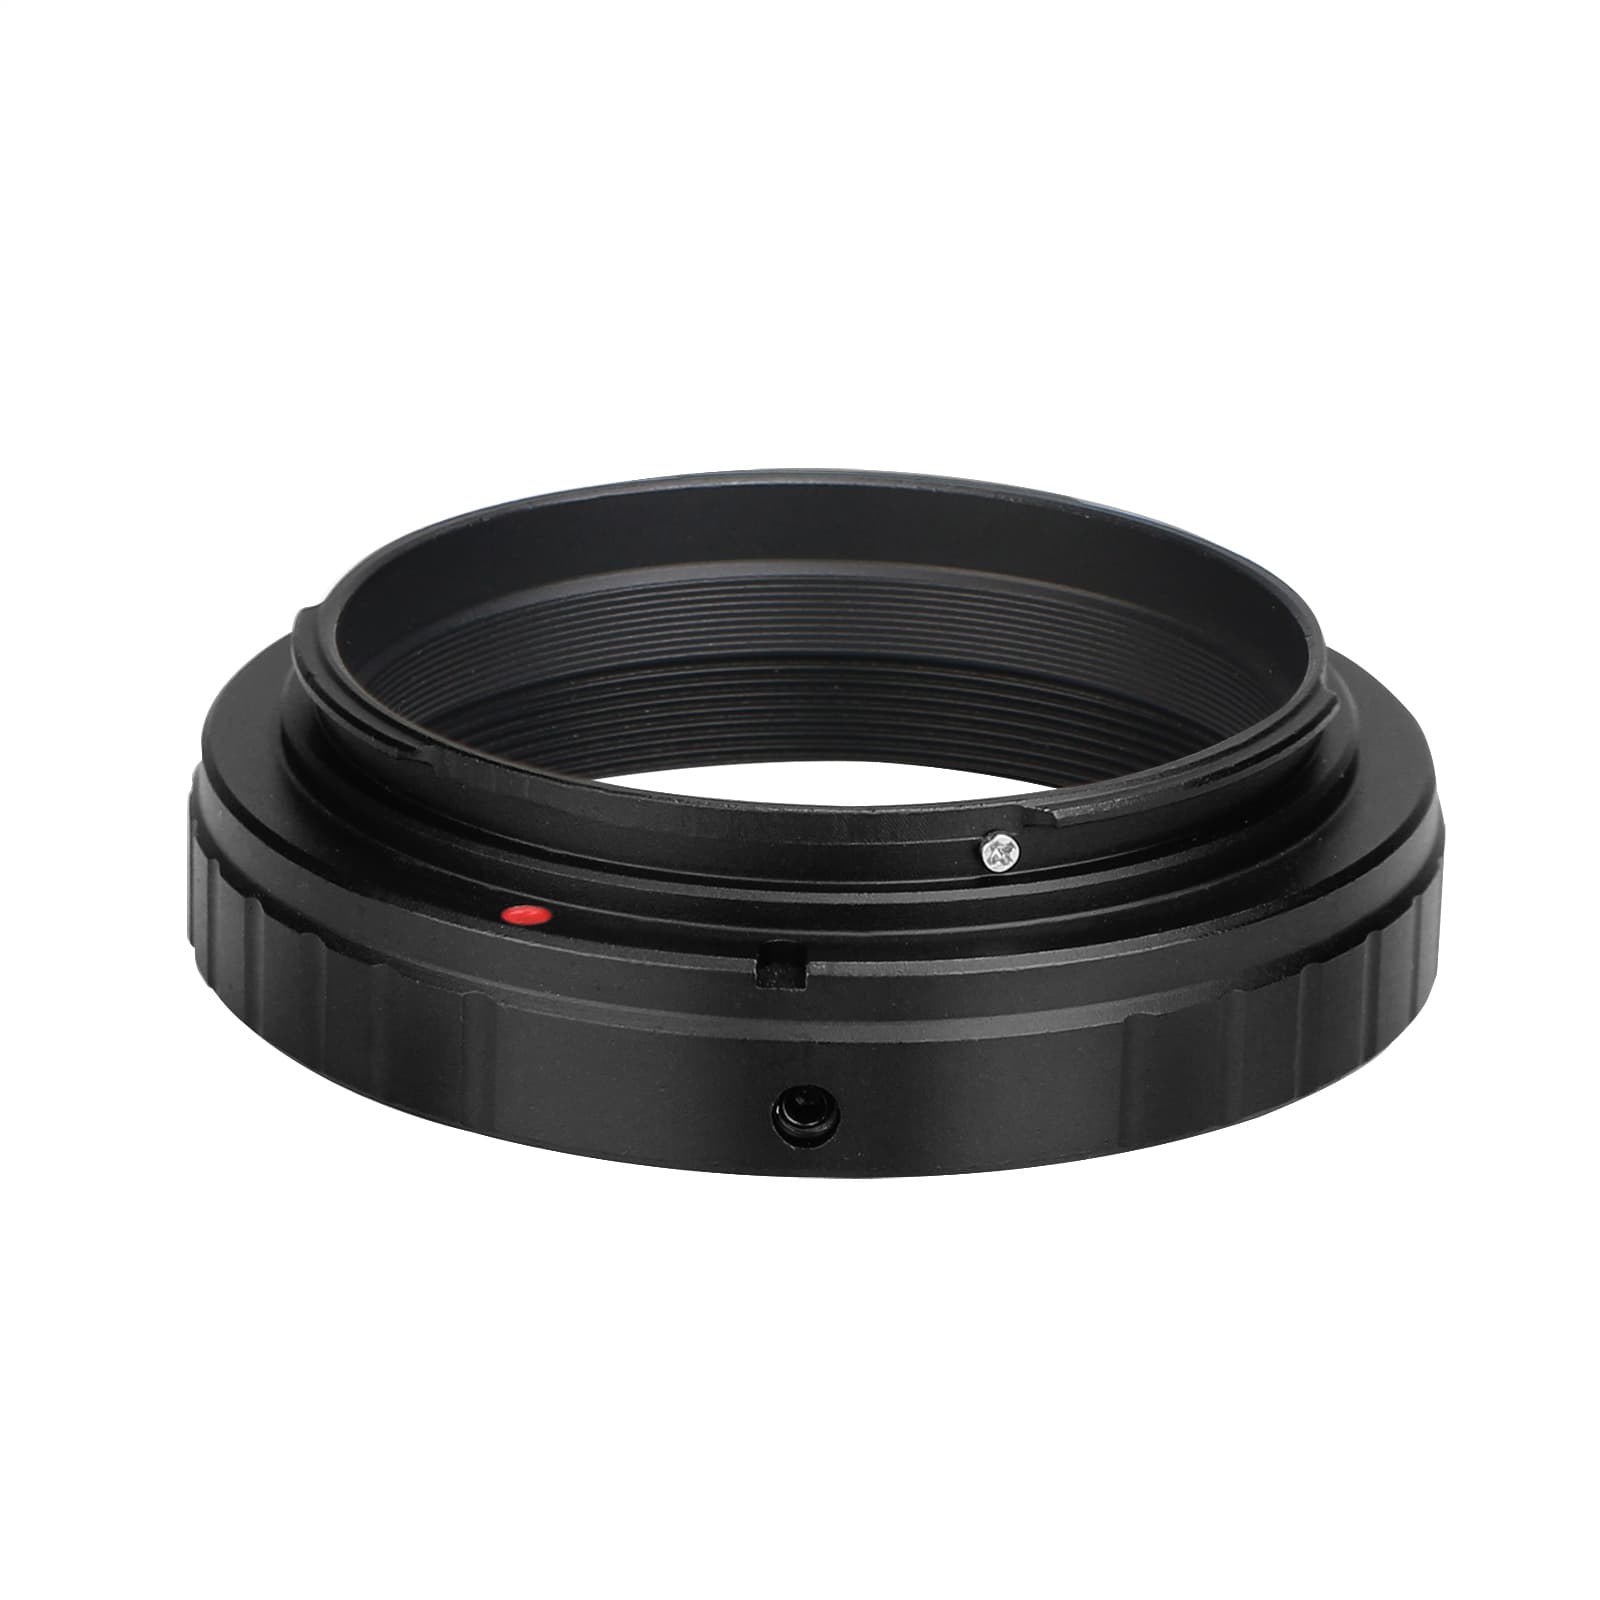 Svbony Accessory Svbony T-Ring for Canon Cameras - W2054